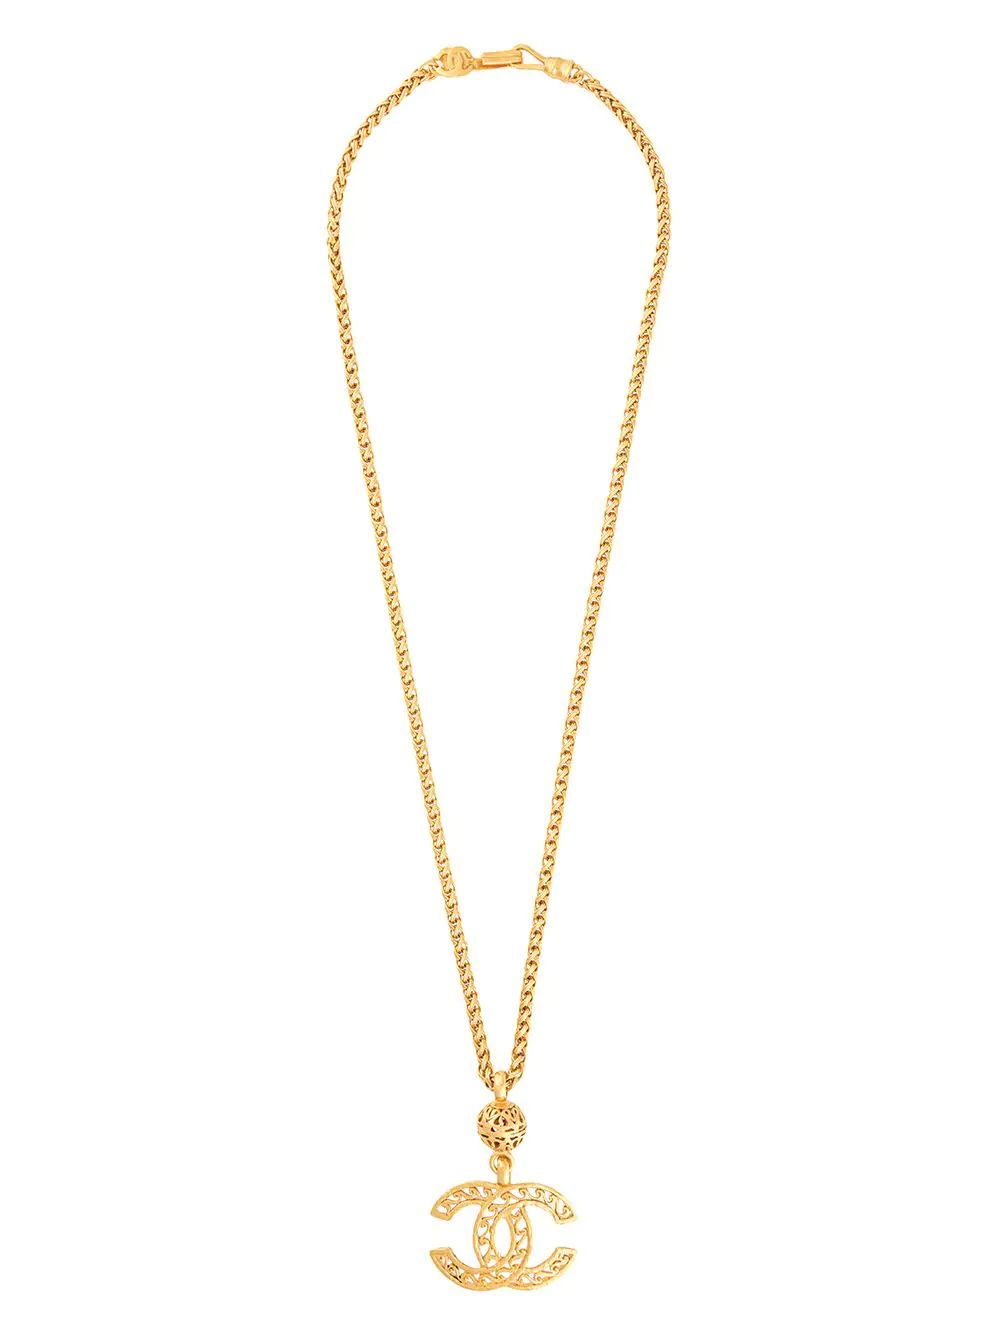 Chanel Pre-Owned 1995 CC rhinestone-embellished Chain Necklace - Farfetch | Farfetch Global